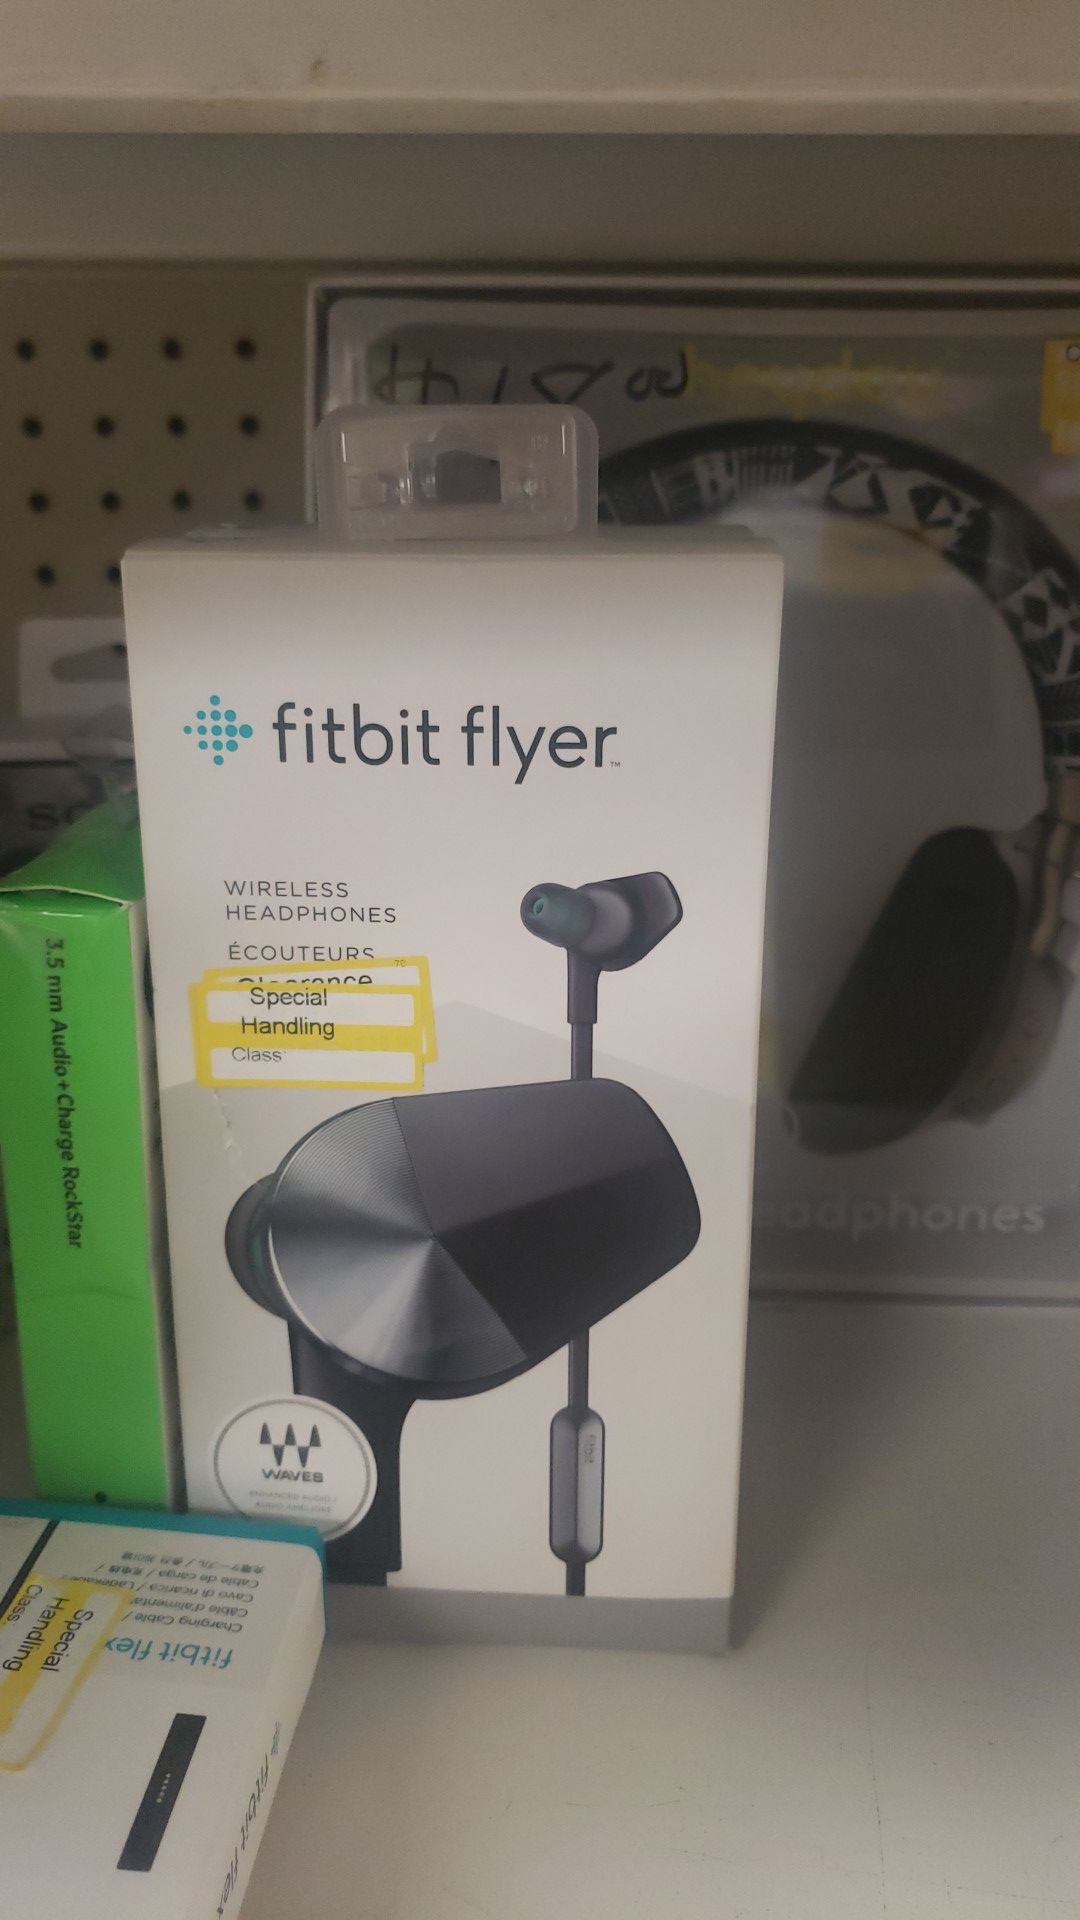 Fitbit flyer wireless headphones